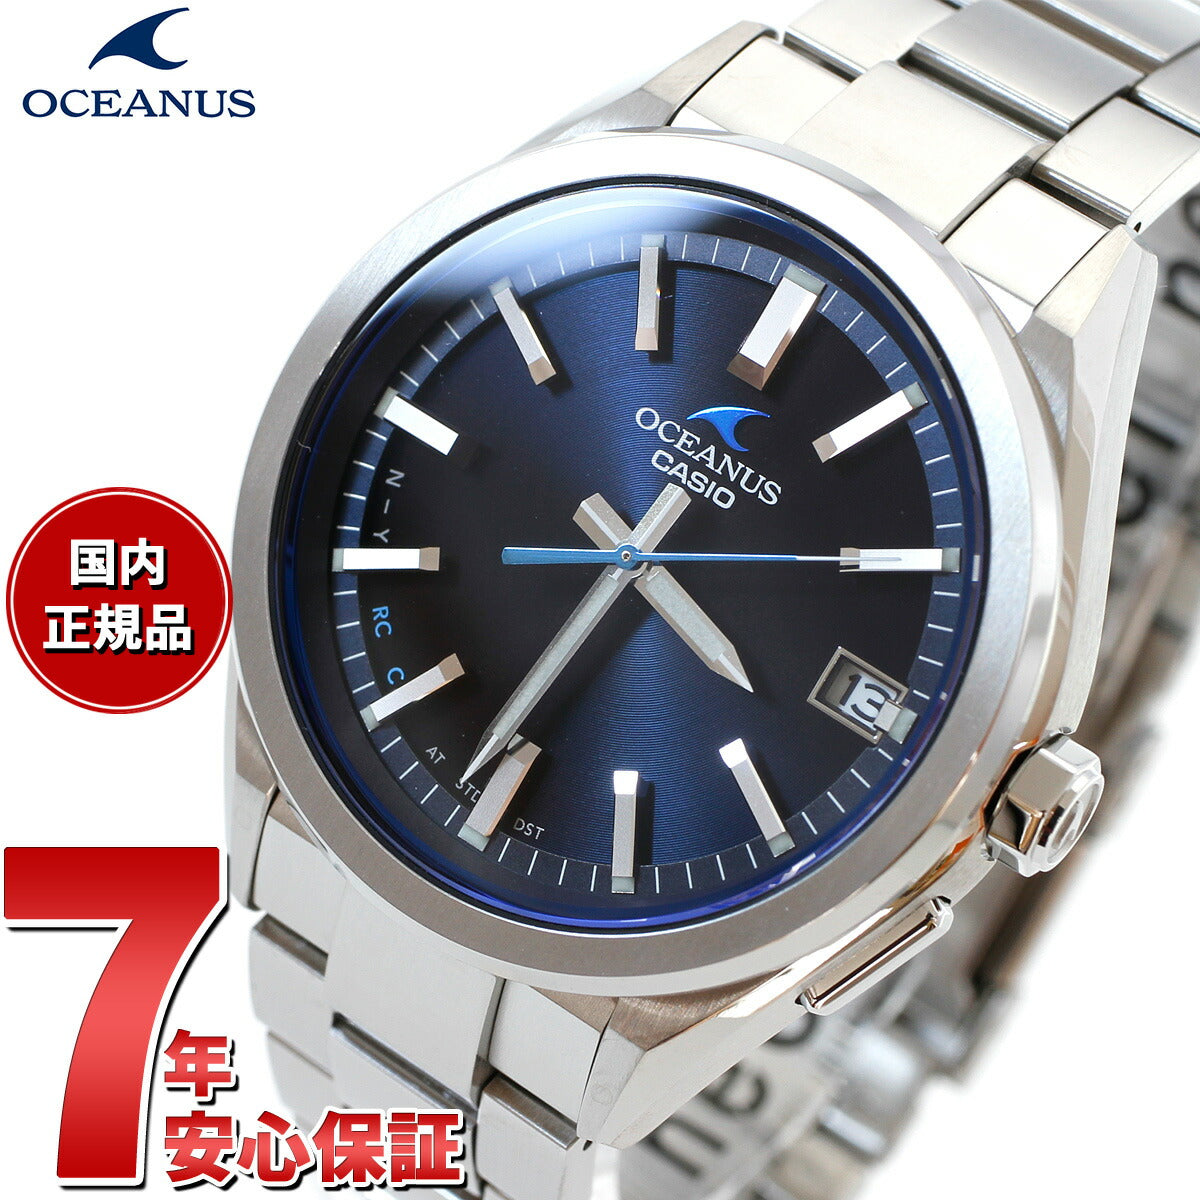 カシオ オシアナス 電波 ソーラー 腕時計 メンズ タフソーラー CASIO OCEANUS CLASSIC LINE OCW-T200S-1AJF